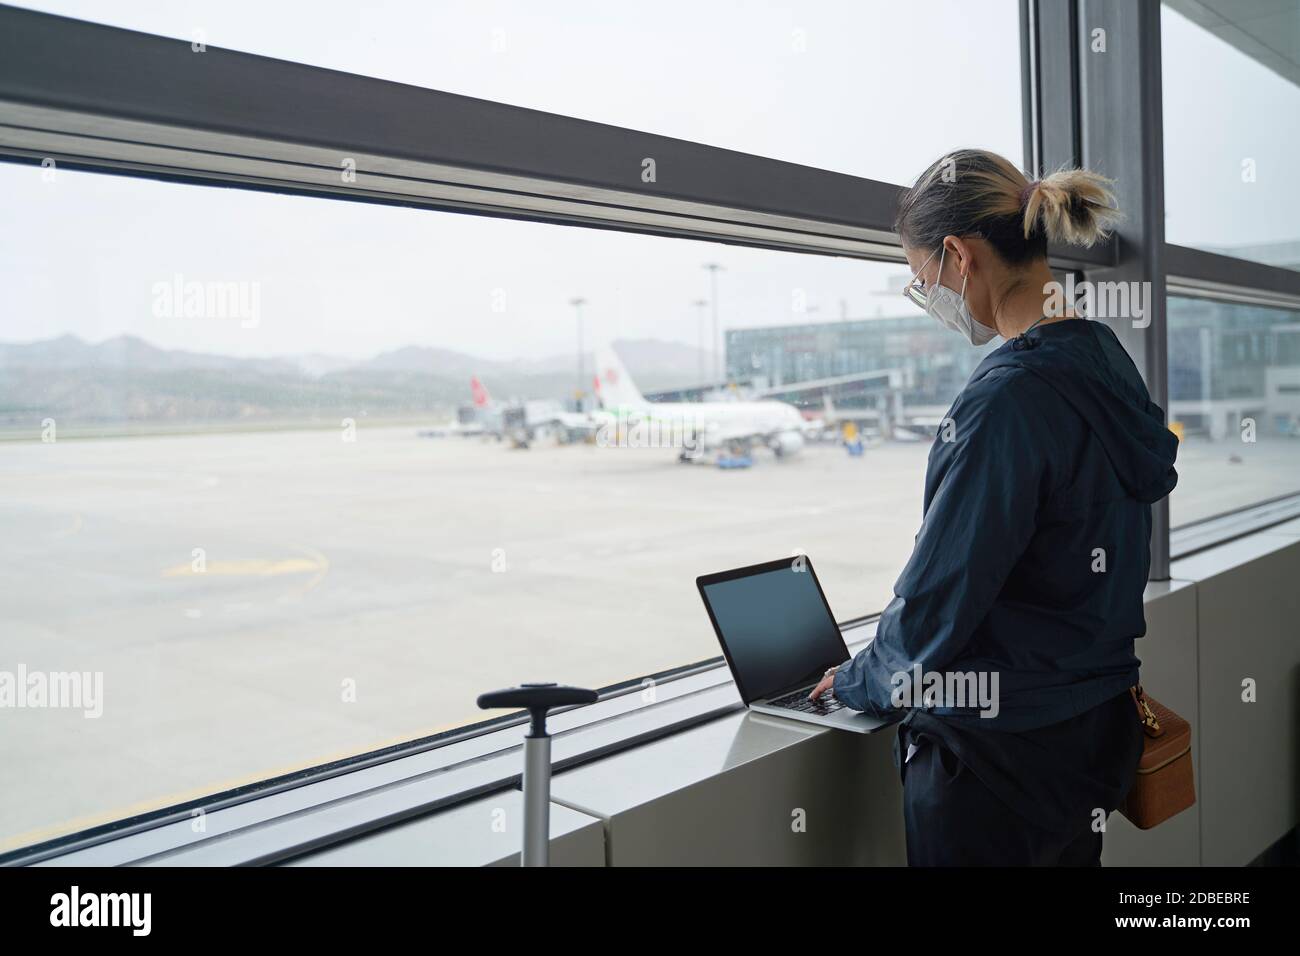 giovane donna asiatica viaggiatore aria femminile che usa il computer portatile durante l'attesa per l'imbarco nell'edificio del terminal dell'aeroporto Foto Stock